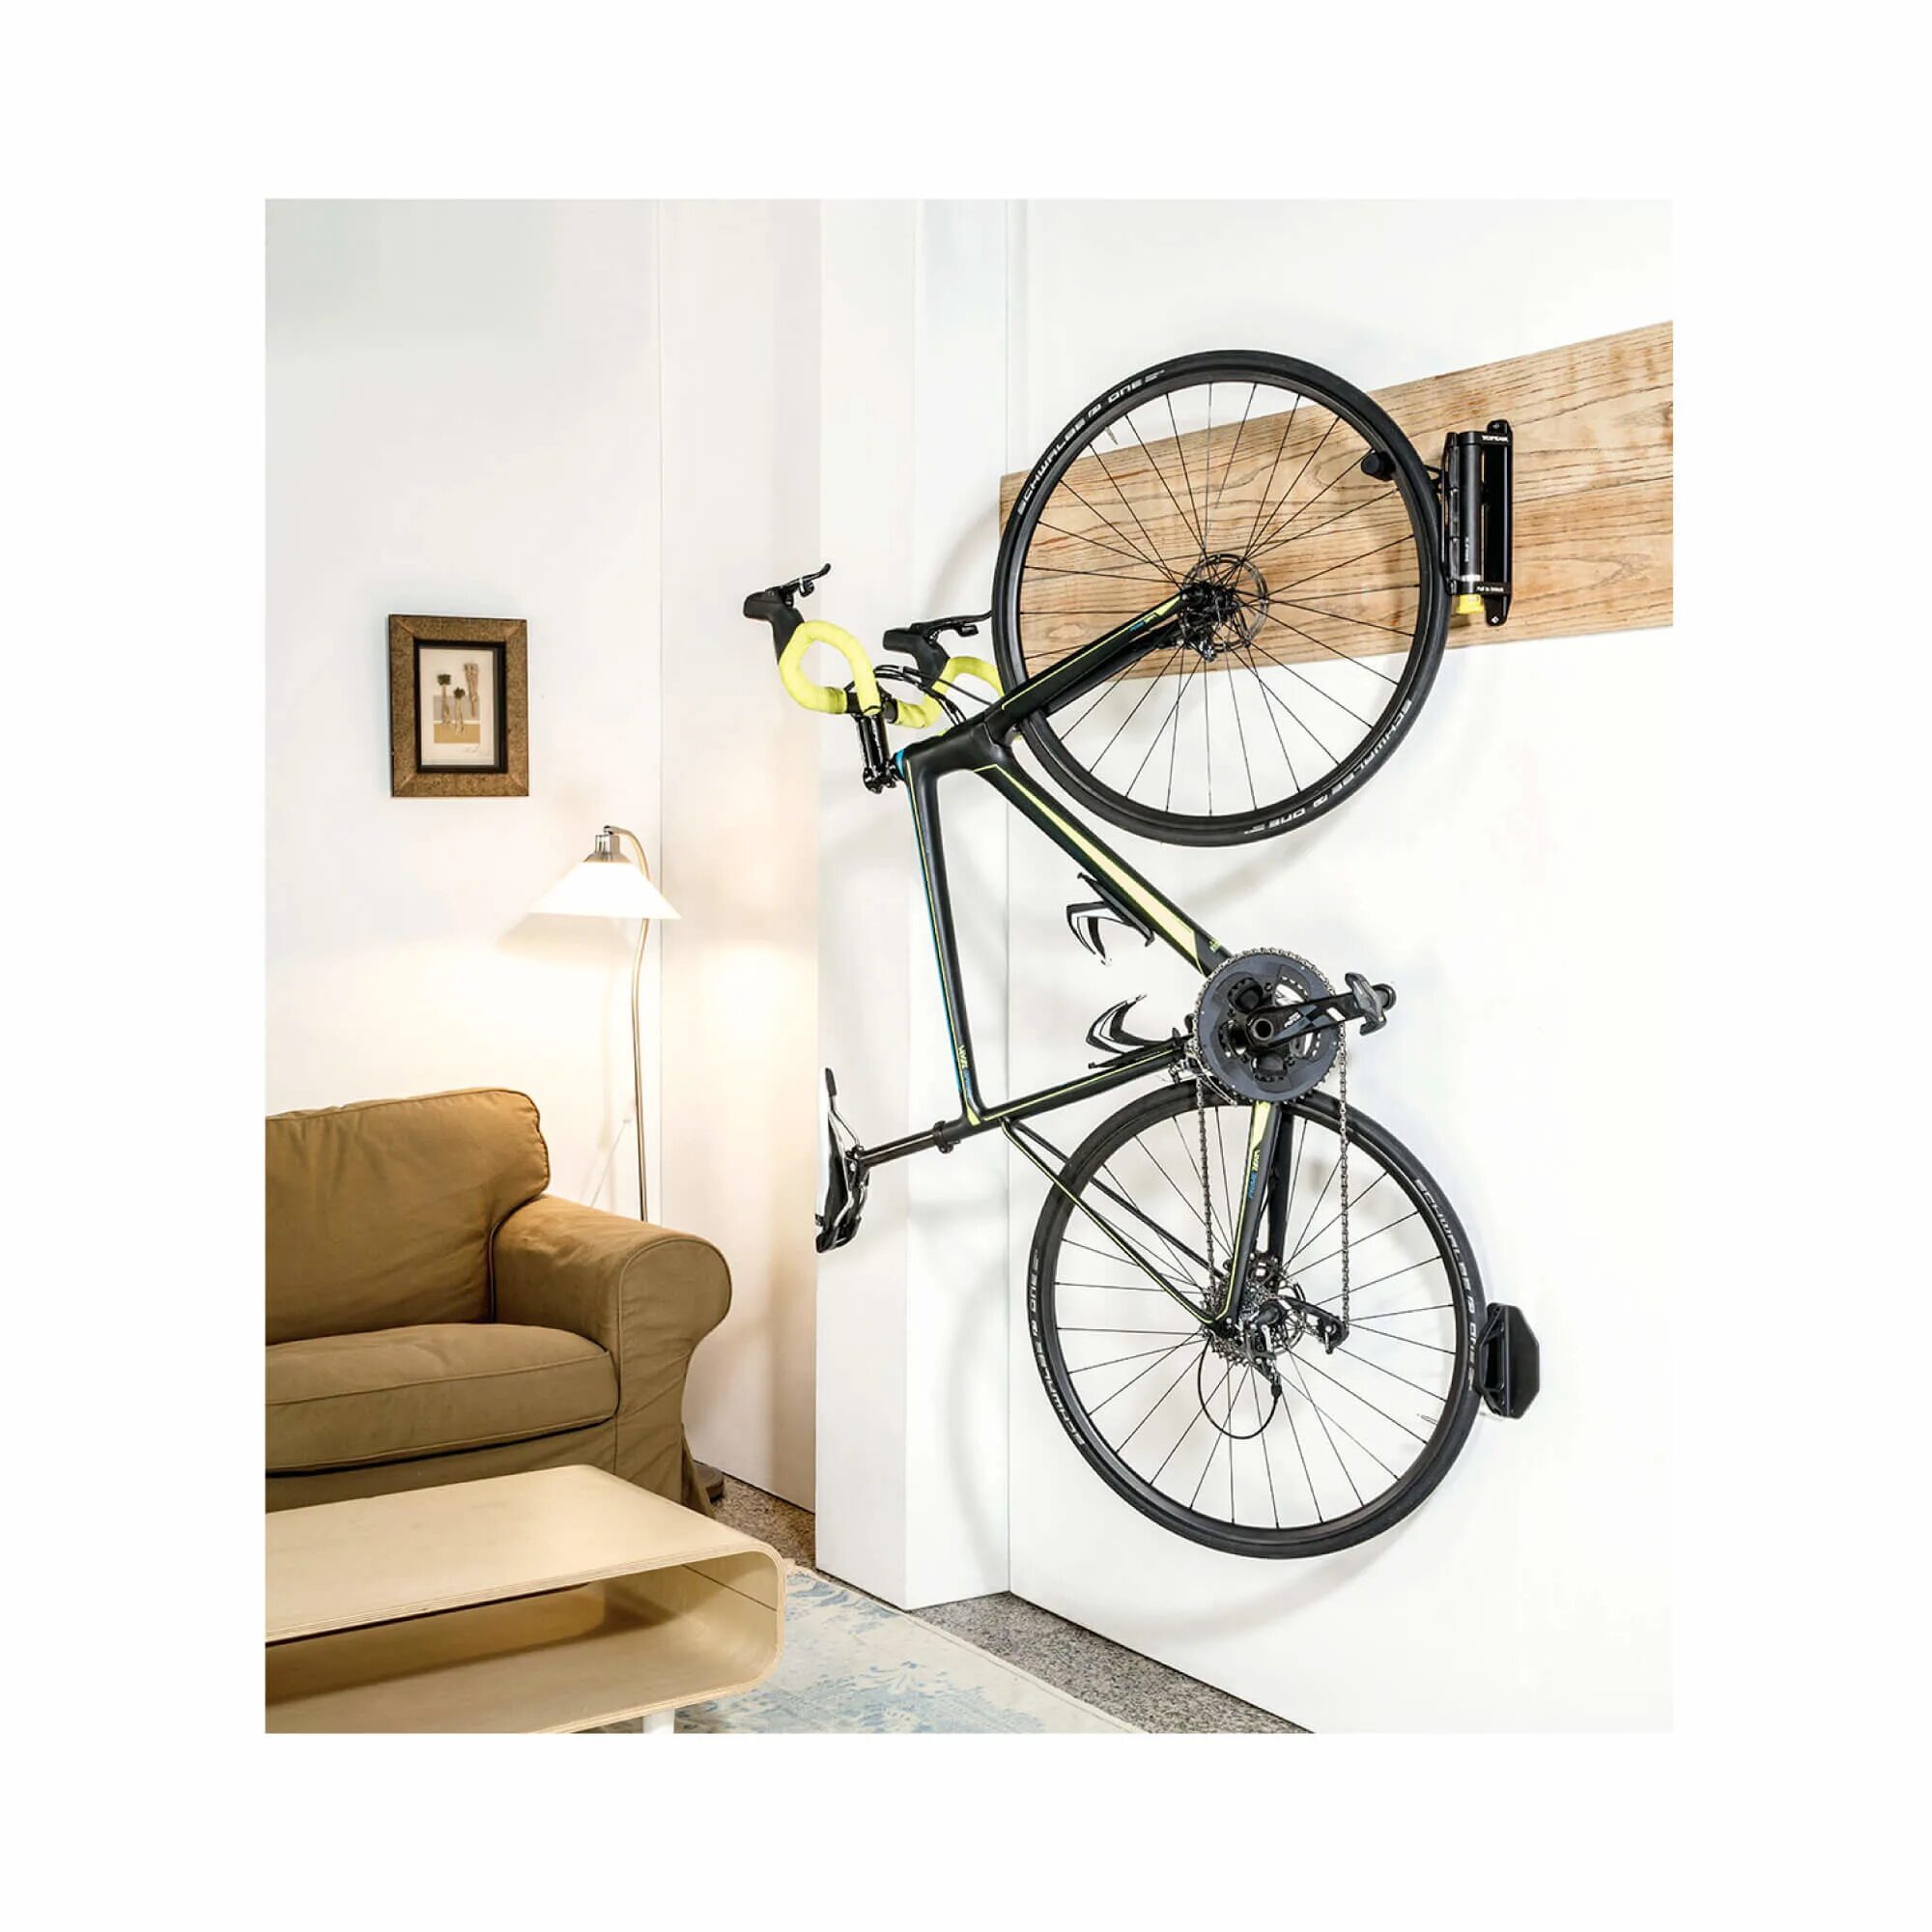 Велосипеды стен купить. Opeak Swing-up ex Bike Holder держатель для велосипеда. Elfa держатель для велосипеда. Велосипед на стене. Подвес для велосипеда на стену.